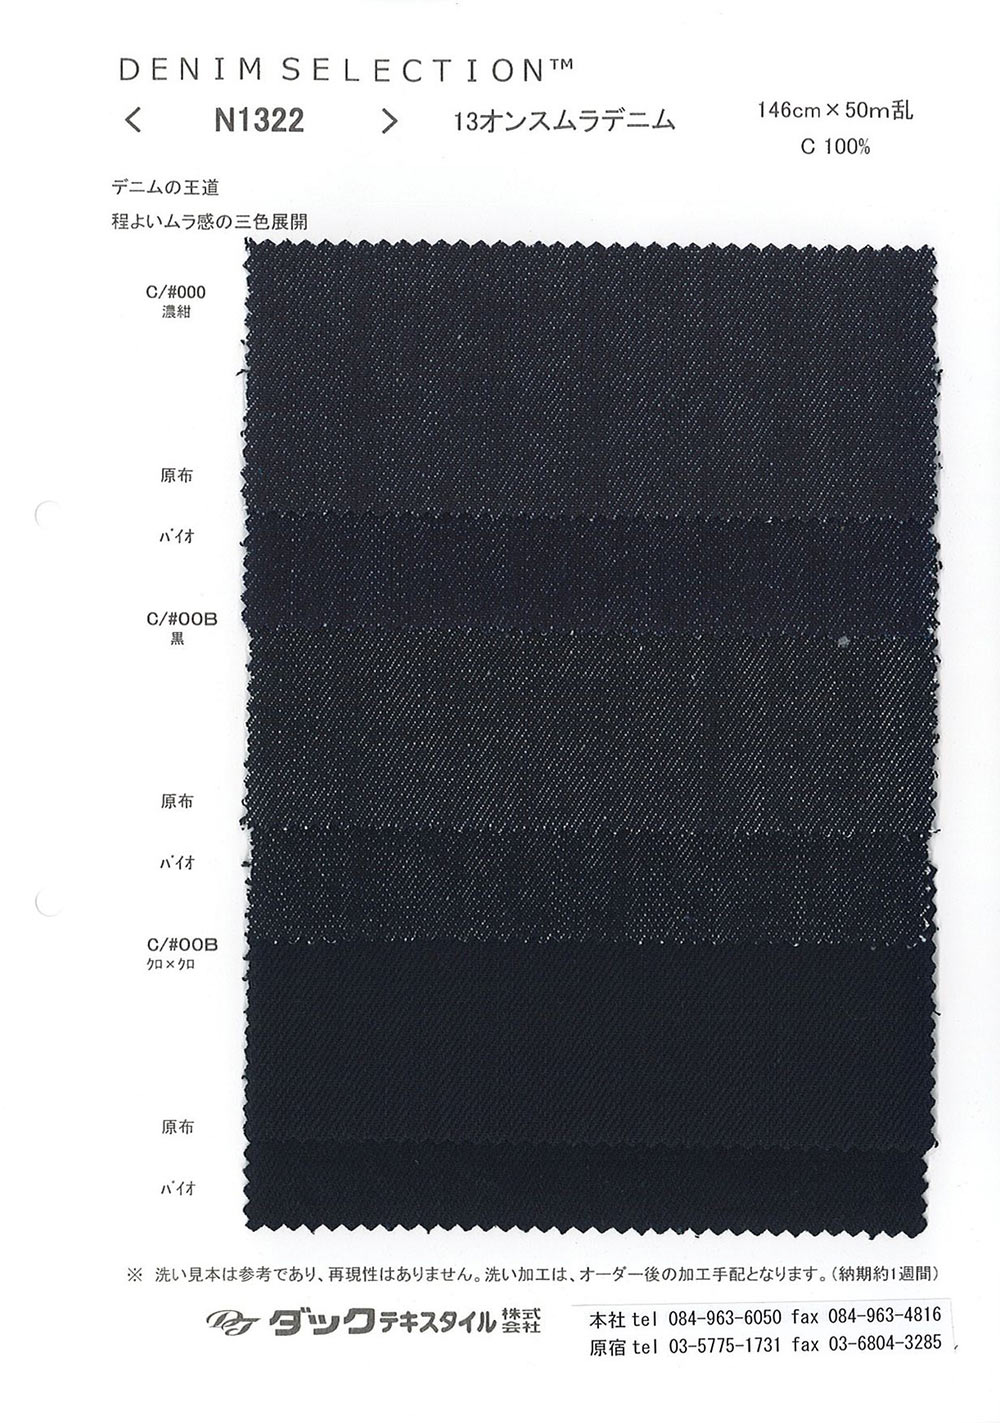 N1322 Denim Mura 13 Oz[Fabrication De Textile] DUCK TEXTILE